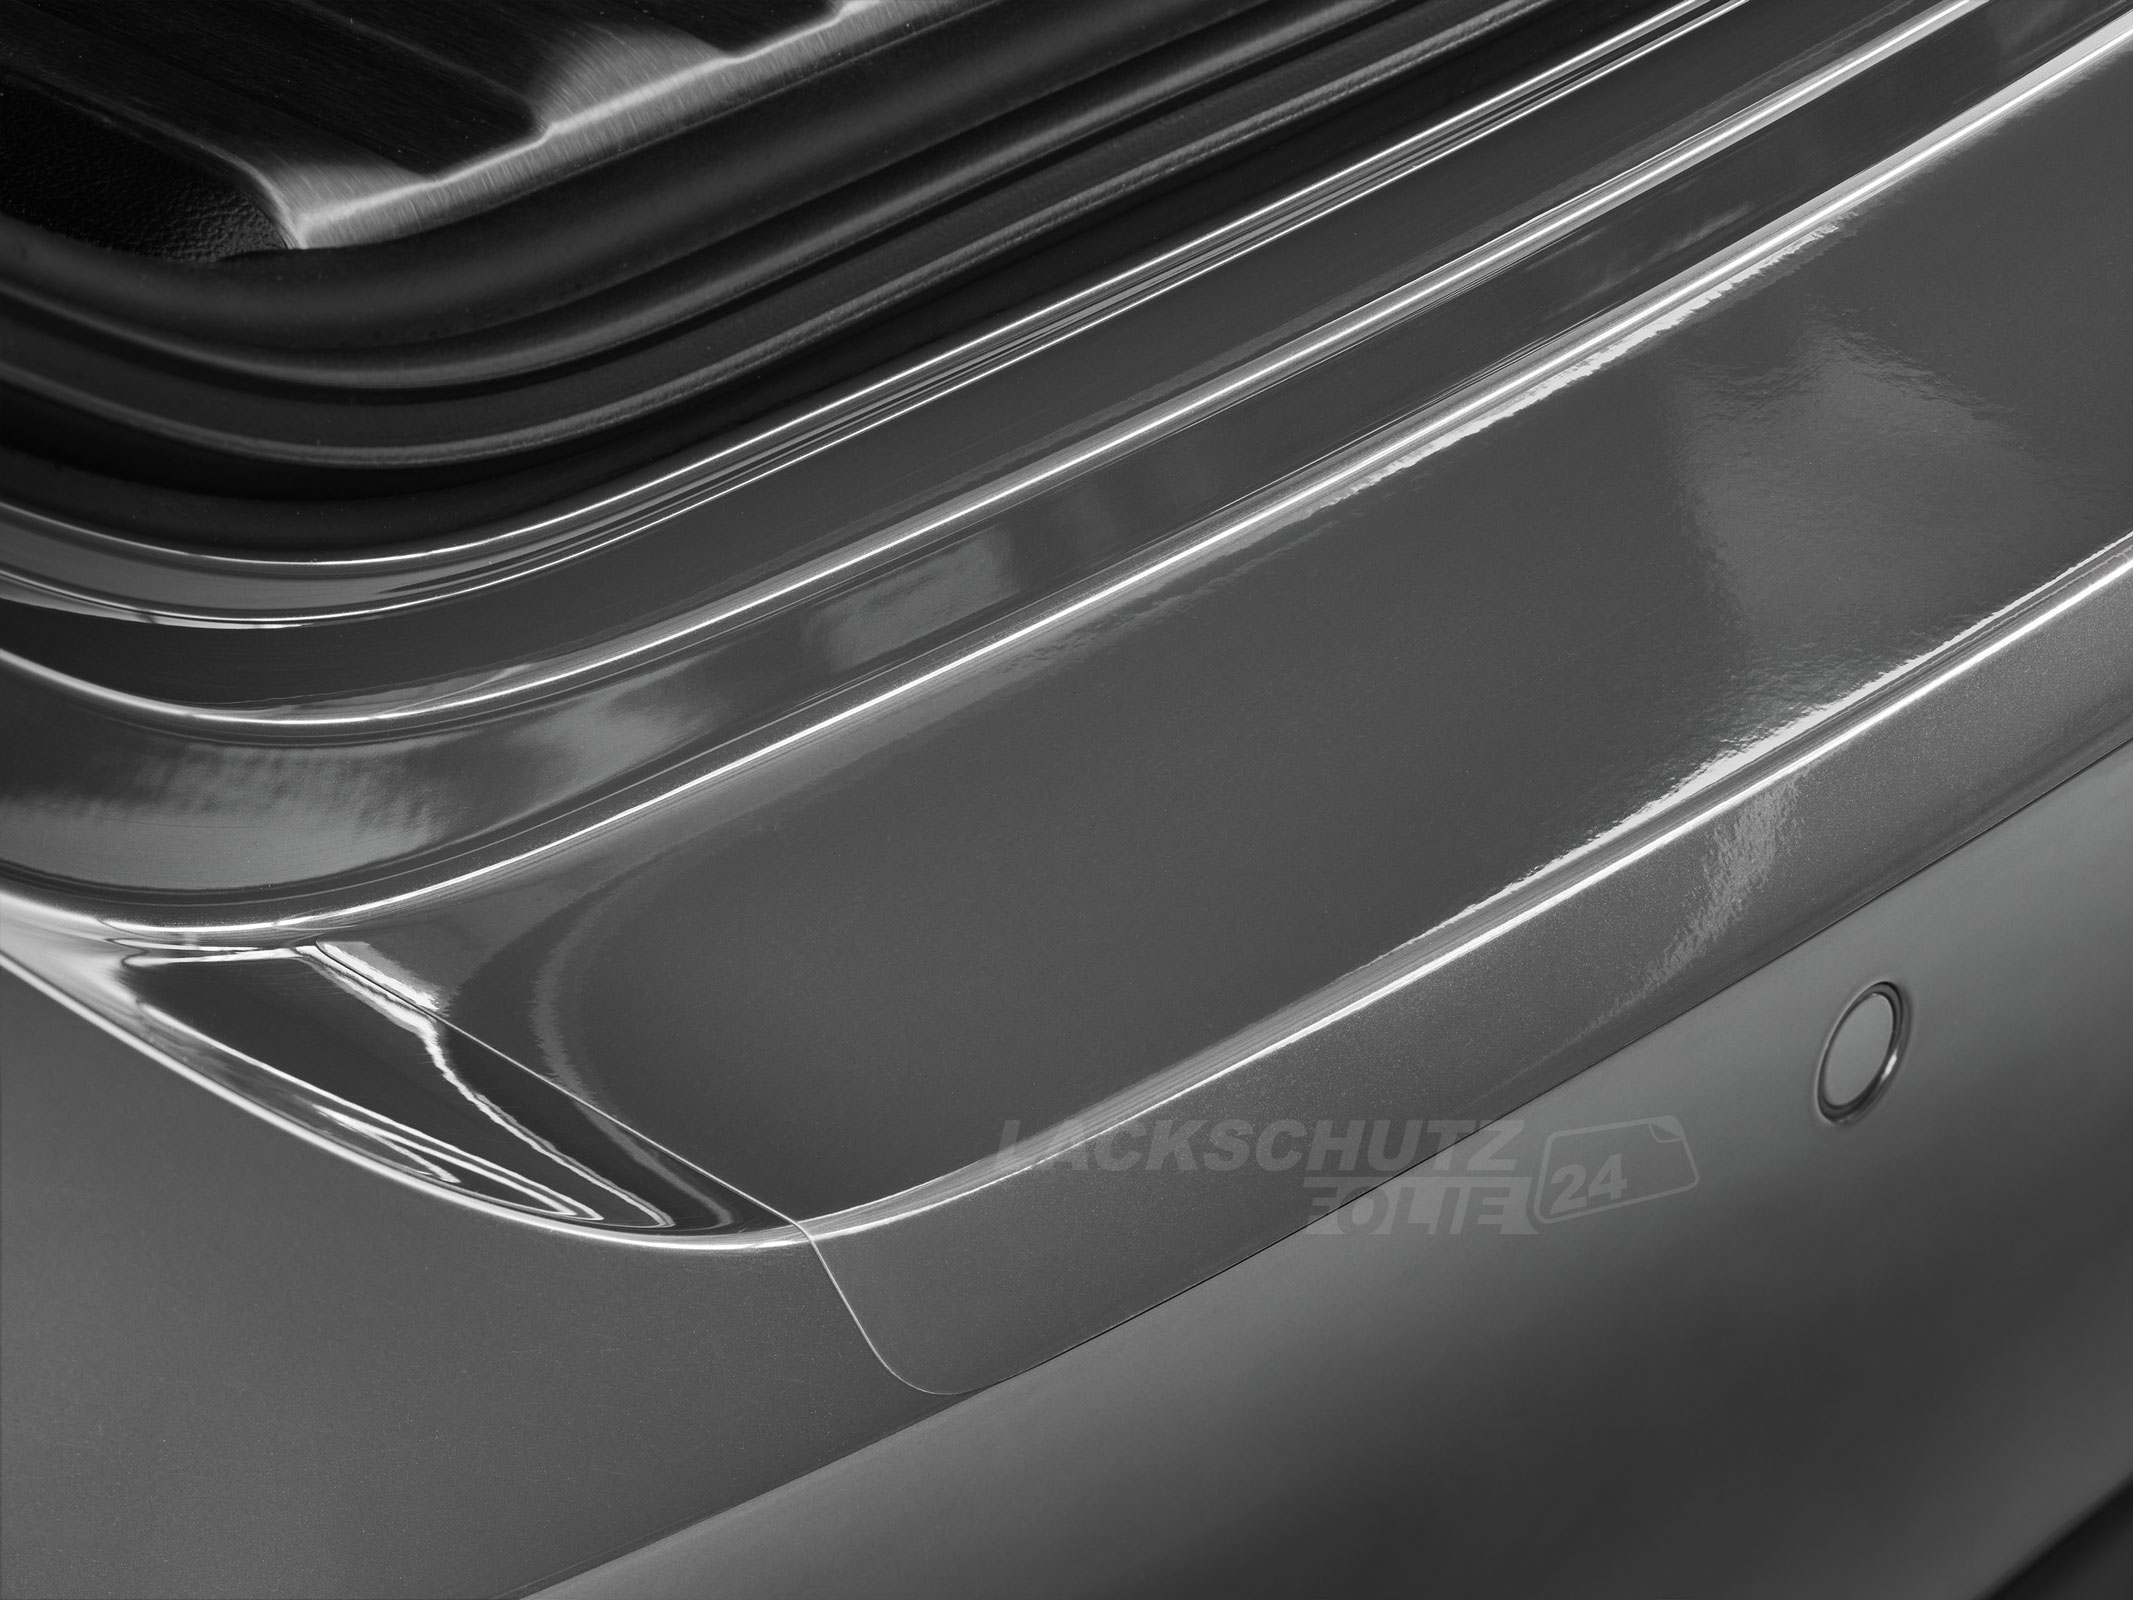 Ladekantenschutzfolie - Transparent Glatt Hochglänzend 150 µm stark für BMW X6 Typ E71, BJ 2008-2014